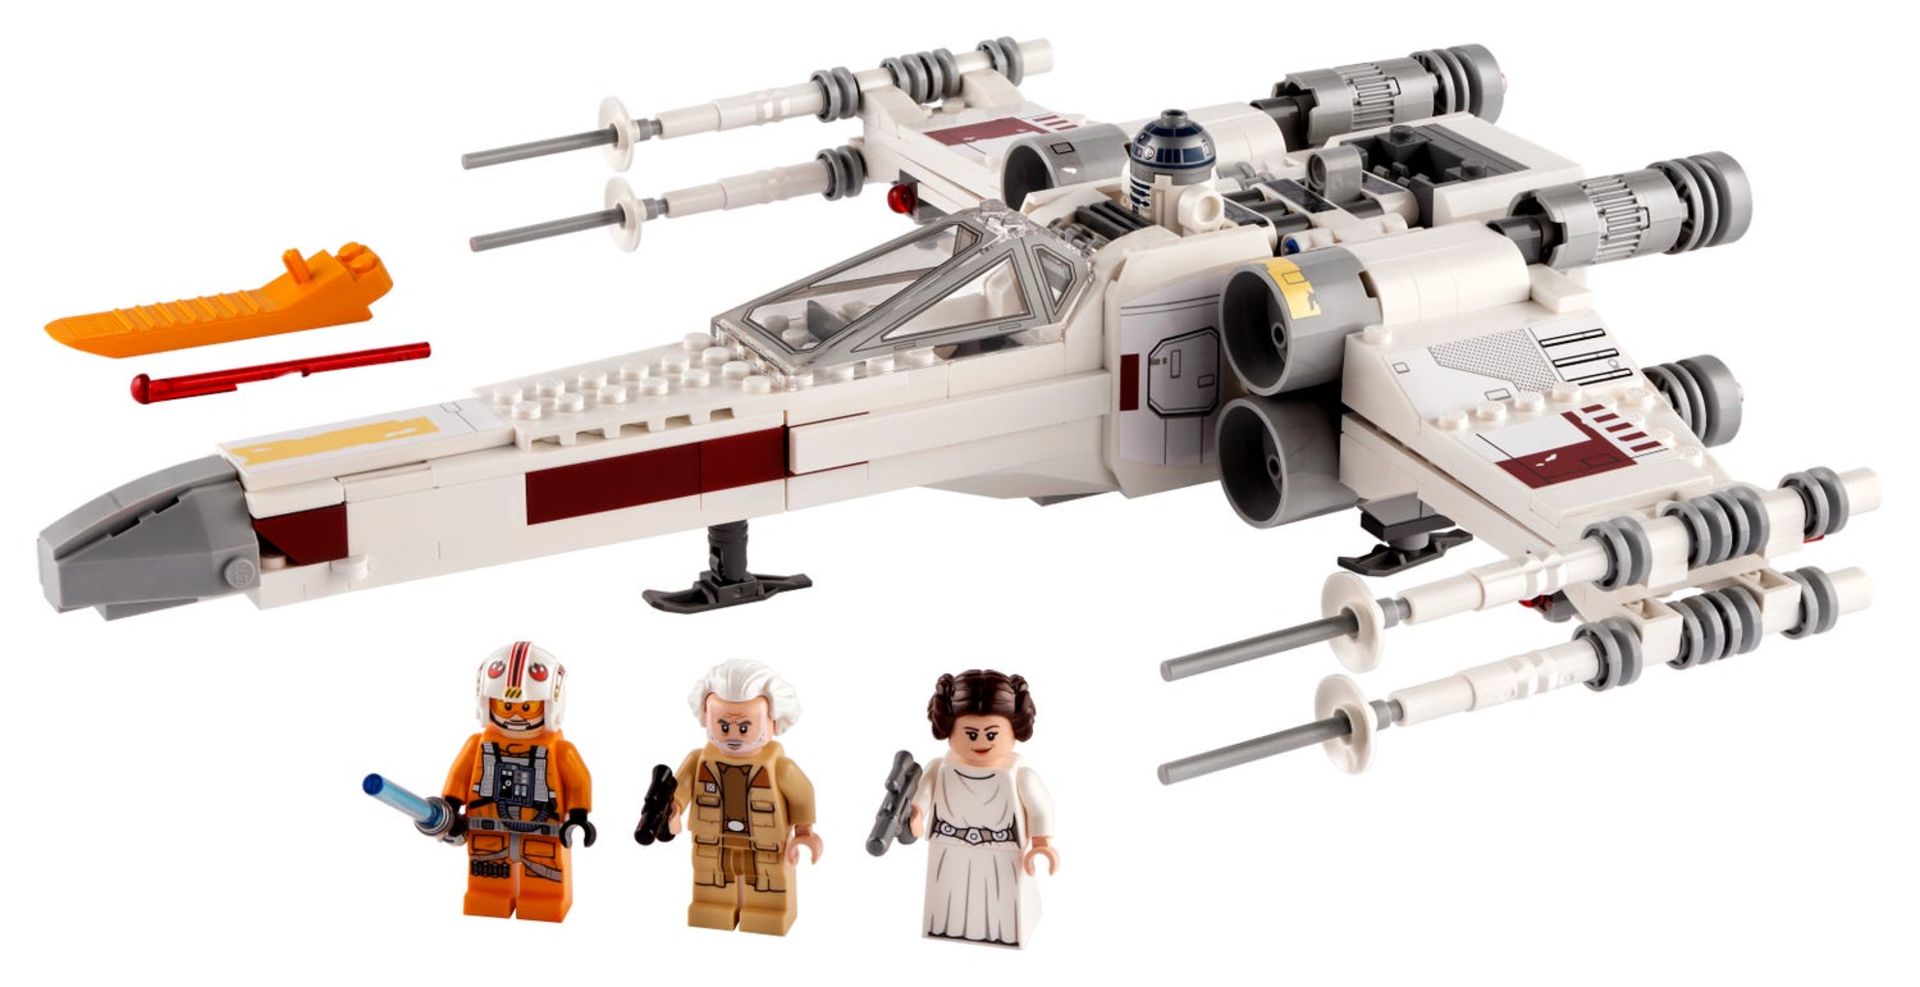 1 x Lego Star Wars Luke SkyWalker X  Wing Fighter 75301 - Brand New - RRP £70.00 - CL987 - Ref: